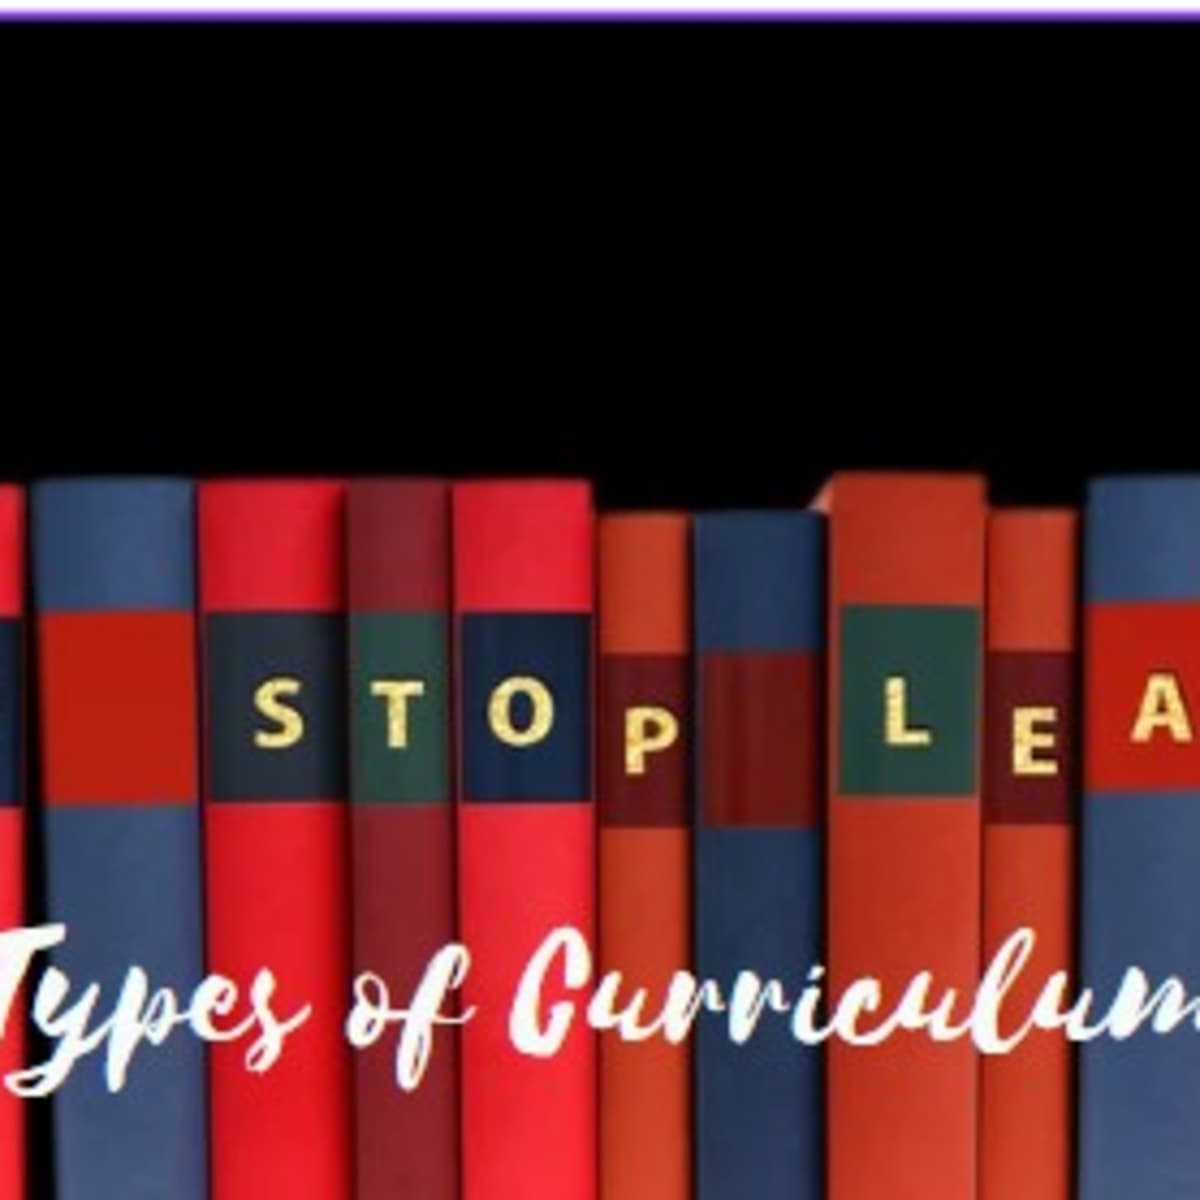 7 types of curriculum